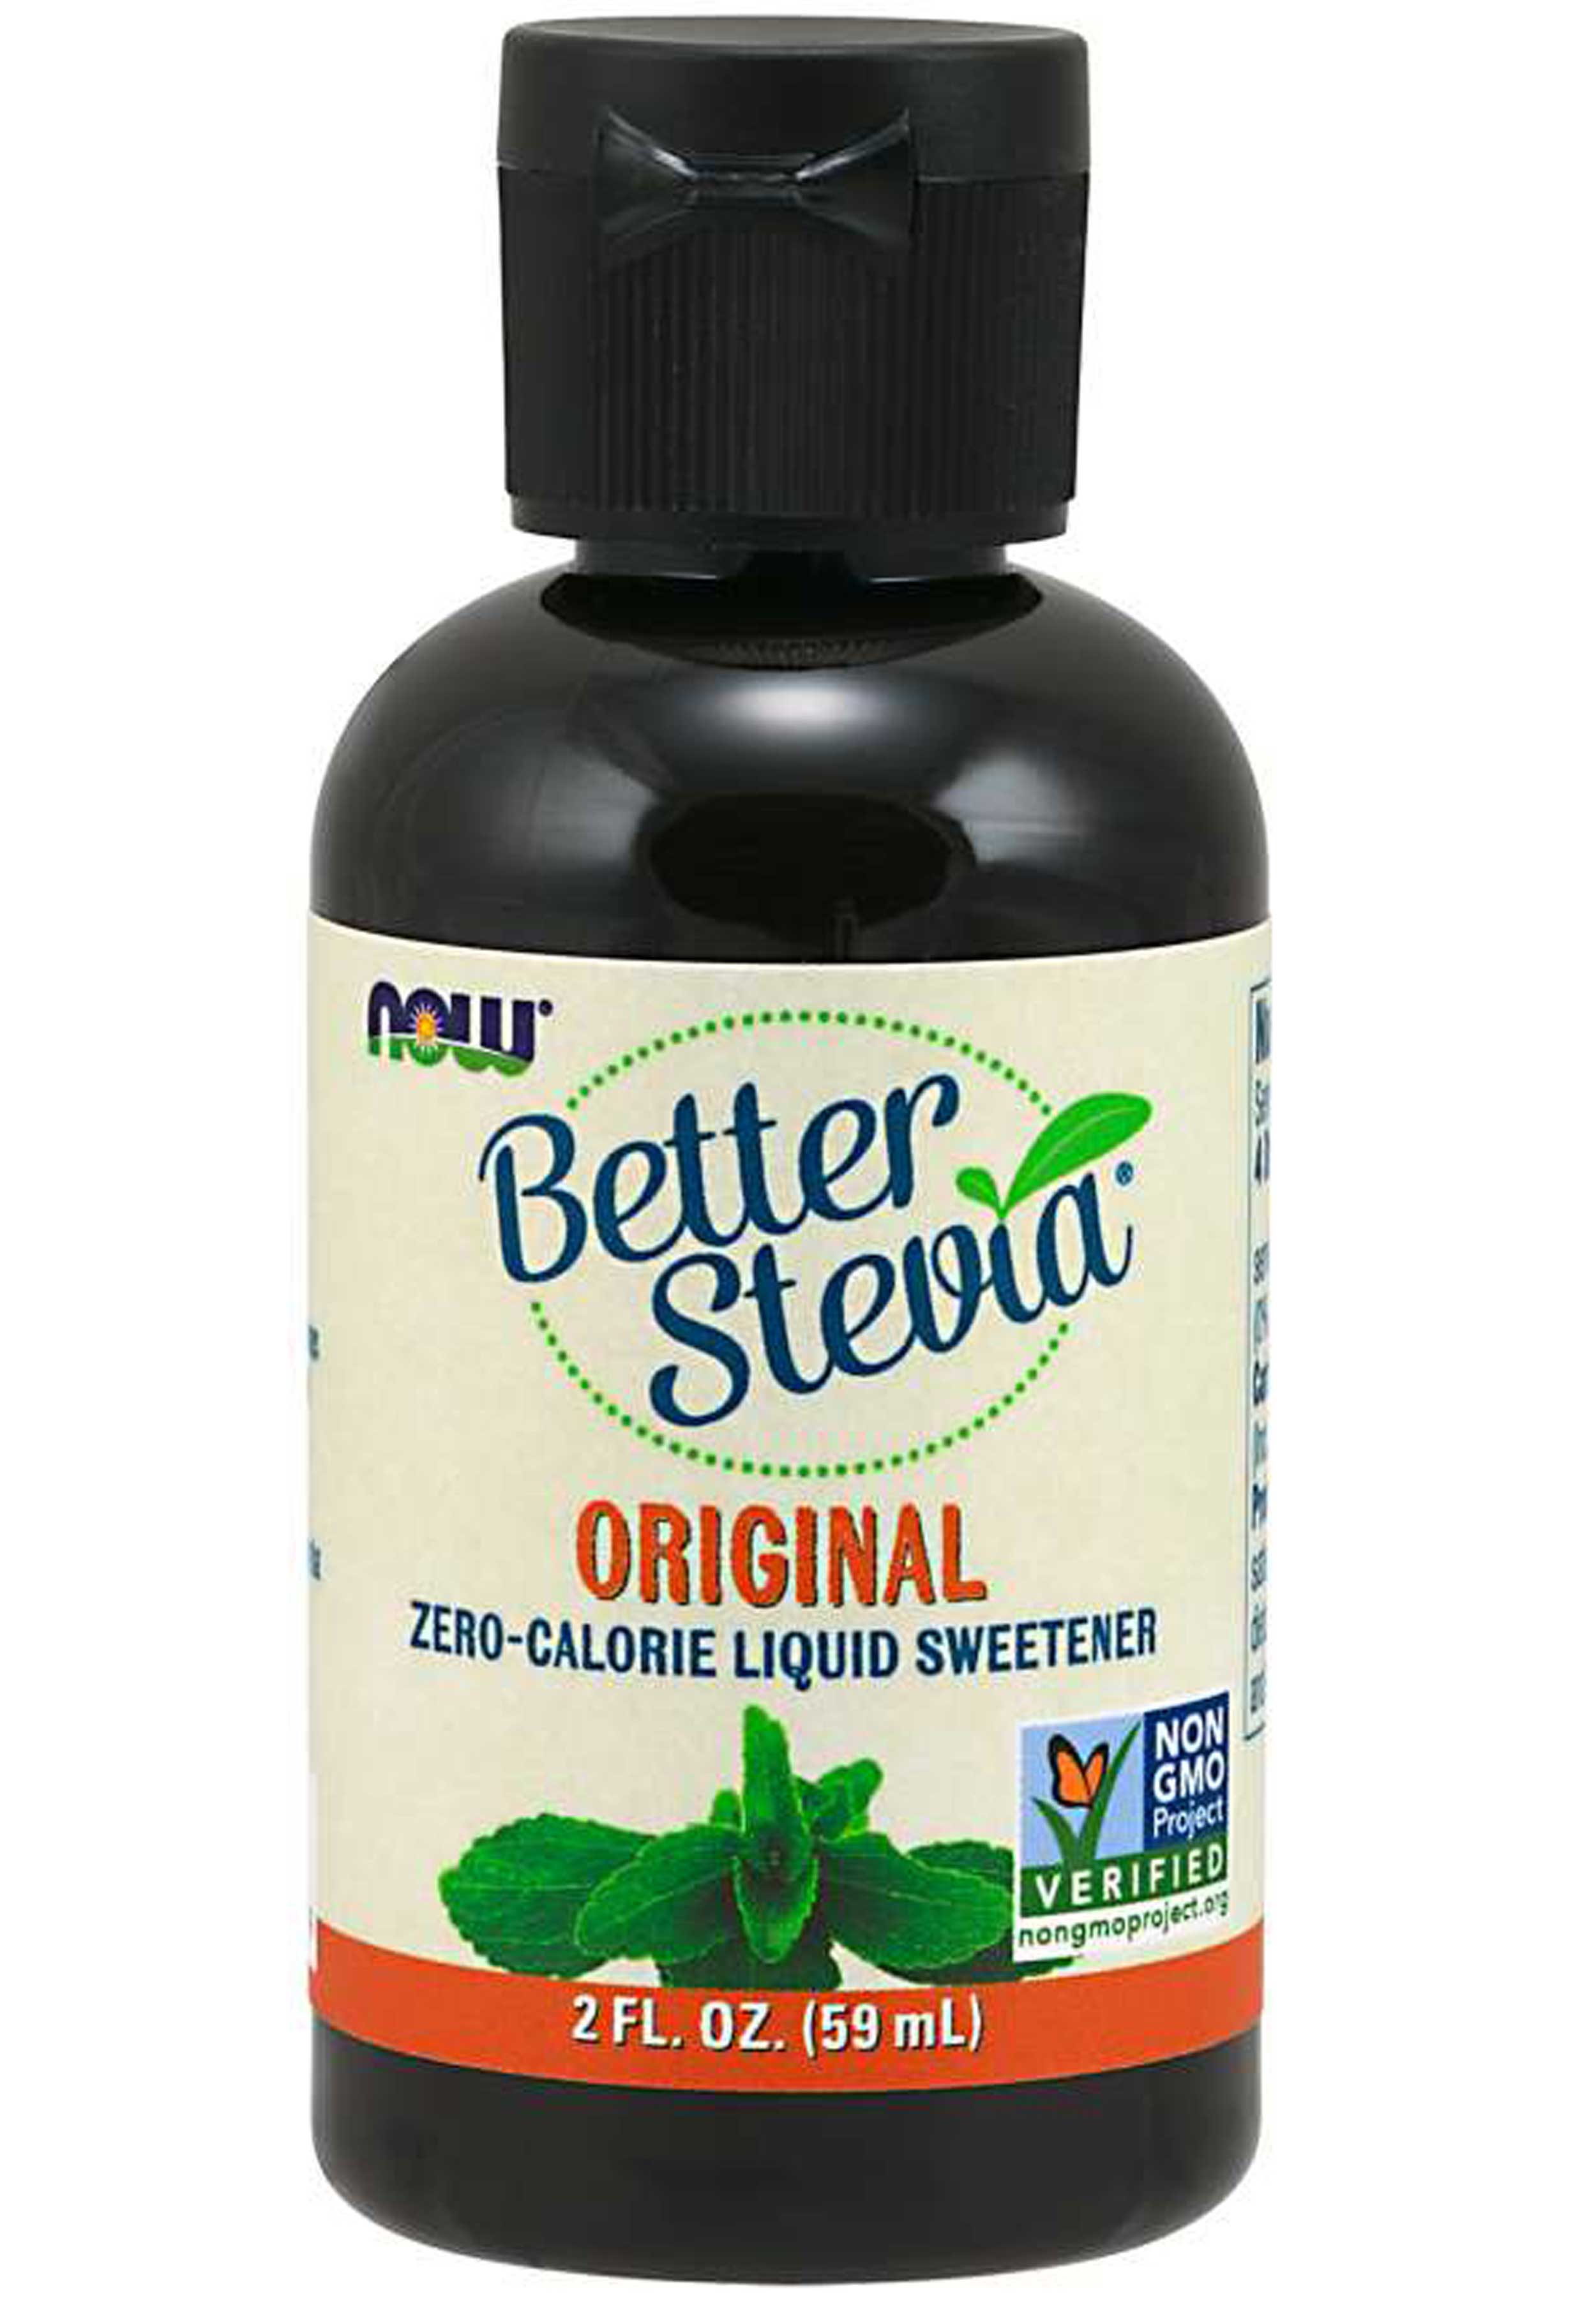 NOW Better Stevia Original